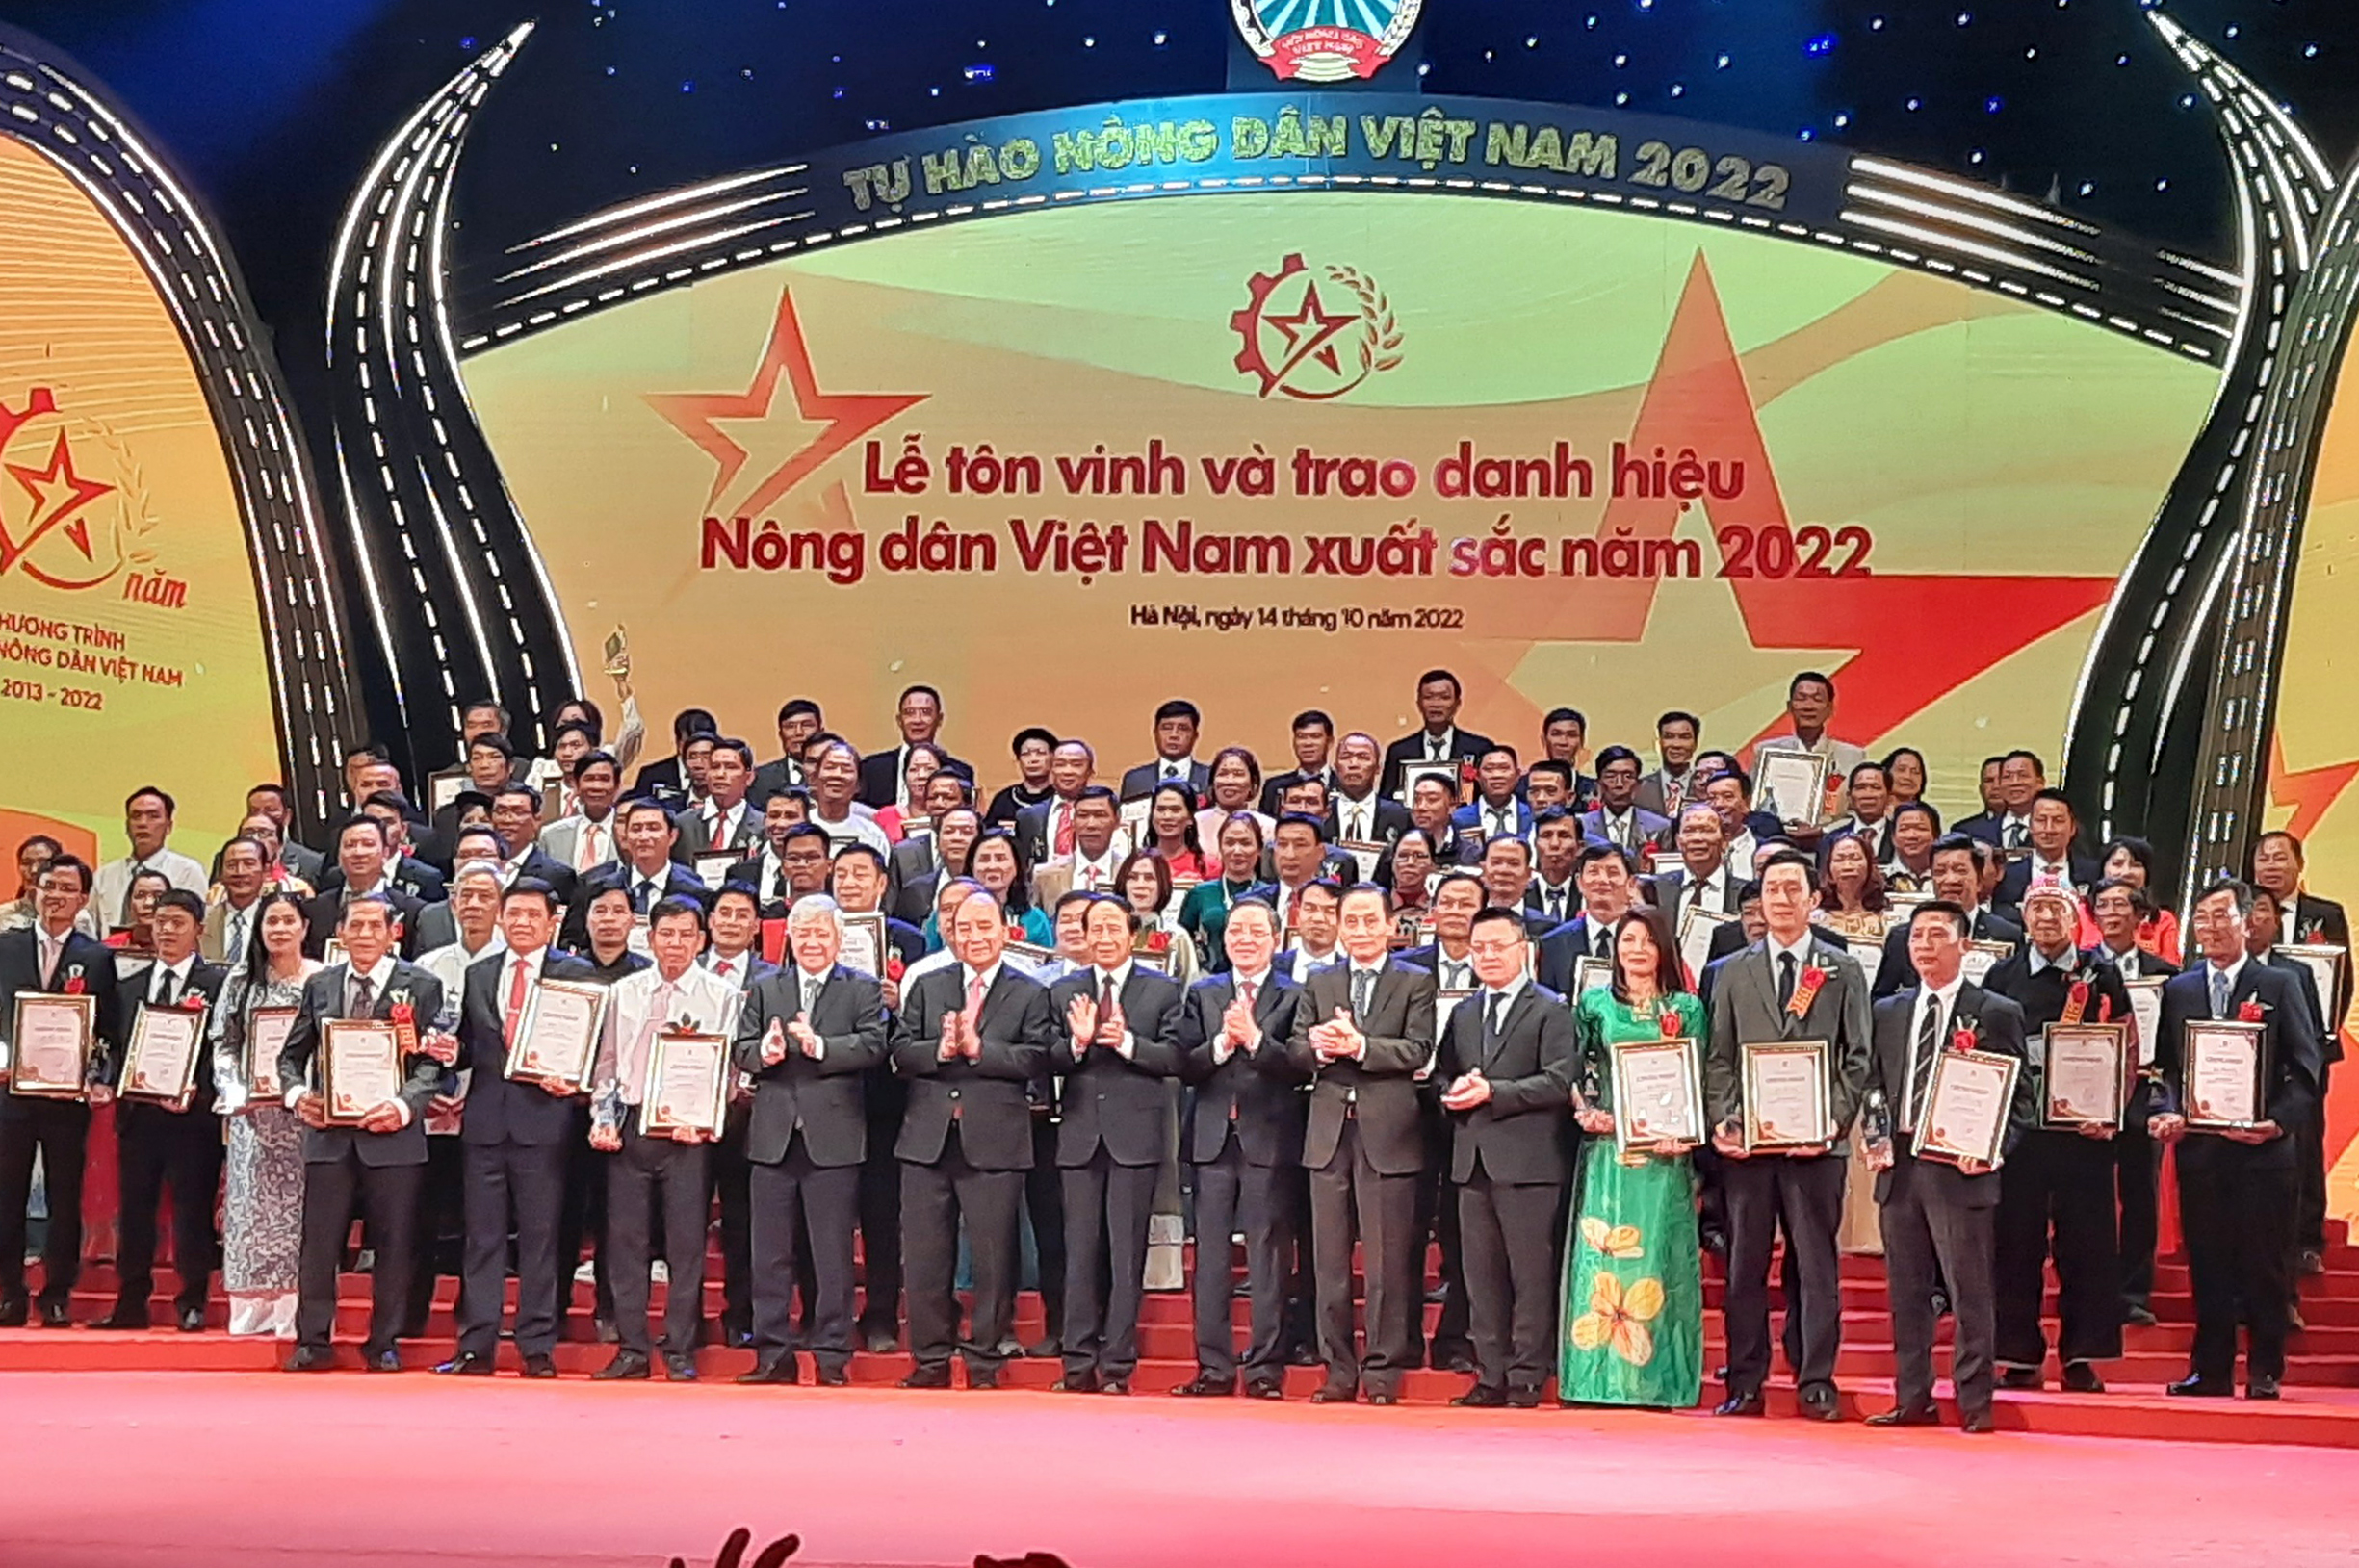 2 nông dân Quảng Bình được tôn vinh "Nông dân Việt Nam xuất sắc 2022"